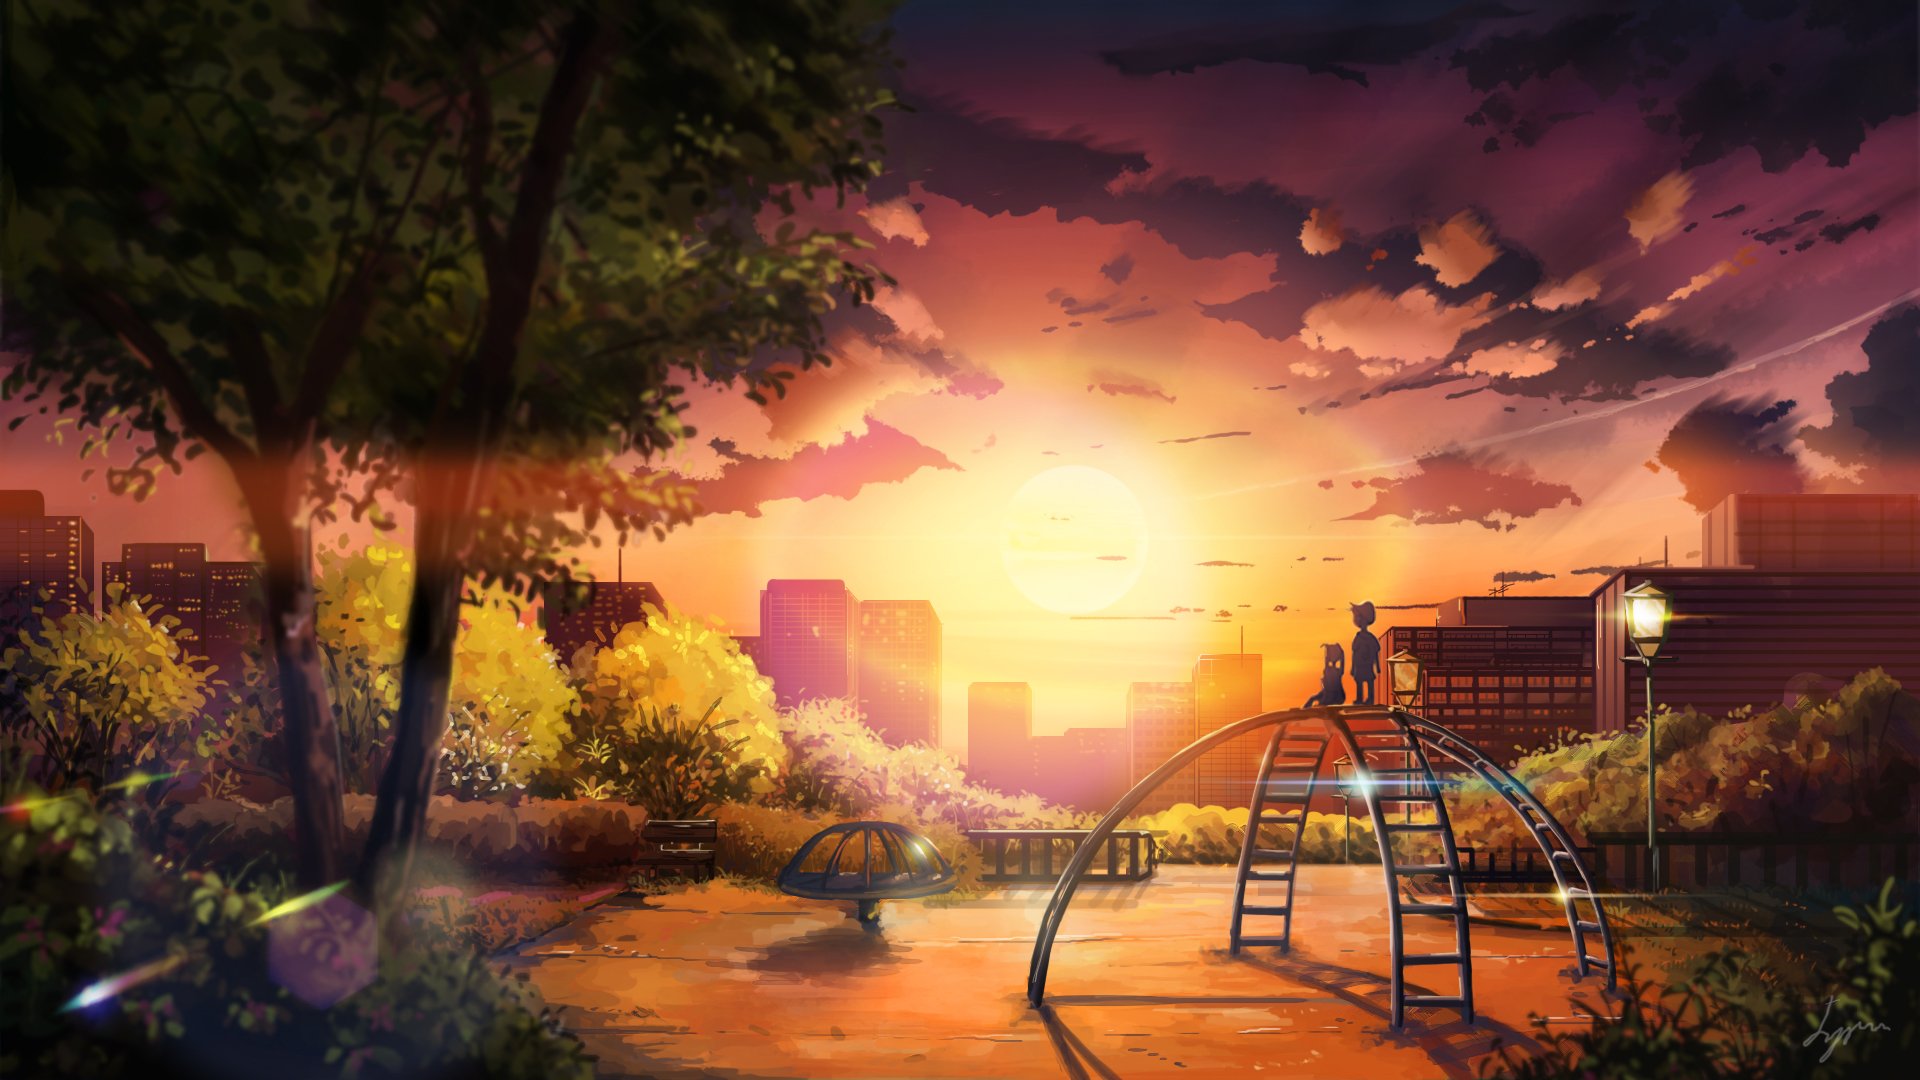 Original Anime Landscape Sunset Sky Cloud Beautiful Tree